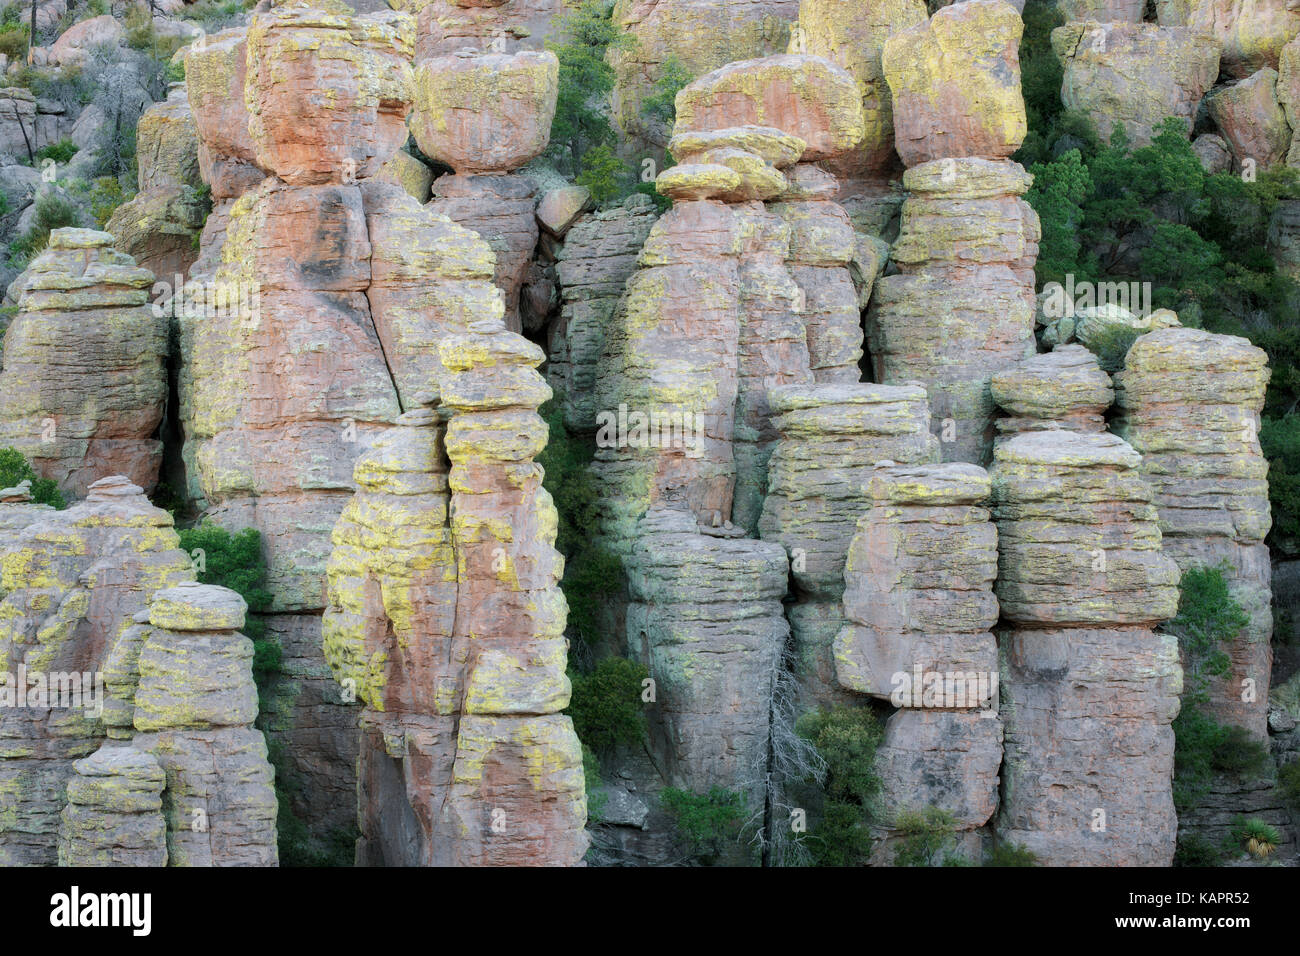 Innumerables formaciones de rocas cubiertas de líquenes y hoodoos se encuentran a lo largo de Arizona se Chiricahua Monumento Nacional. Foto de stock